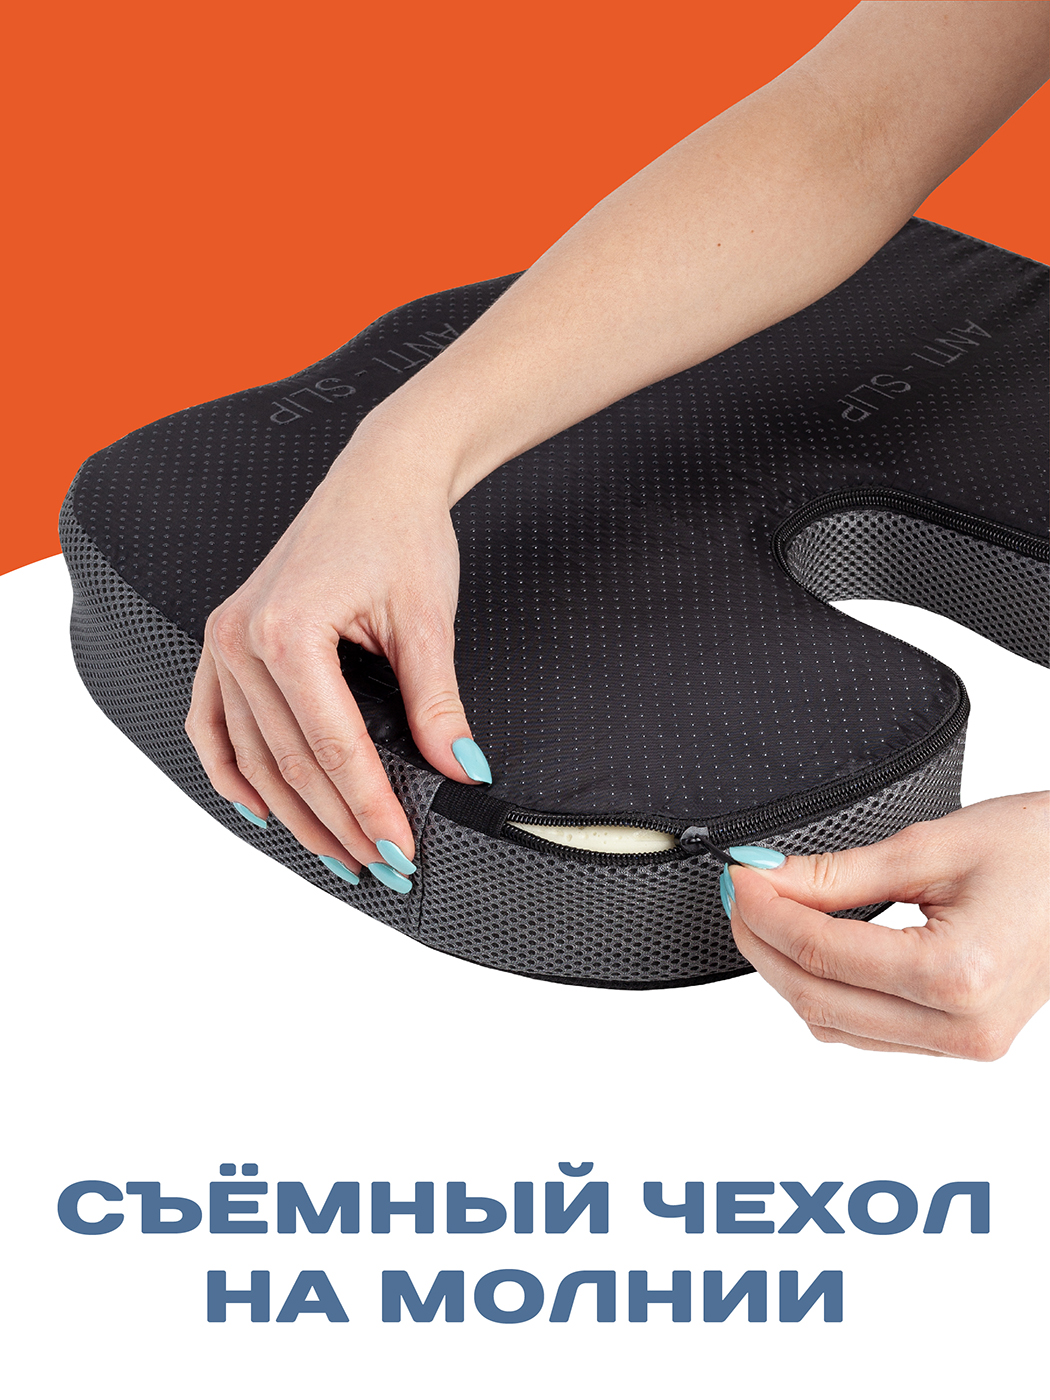 Подушки под ноги, валики, косточки, подковы - купить в интернет-магазине Медтехно в Москве